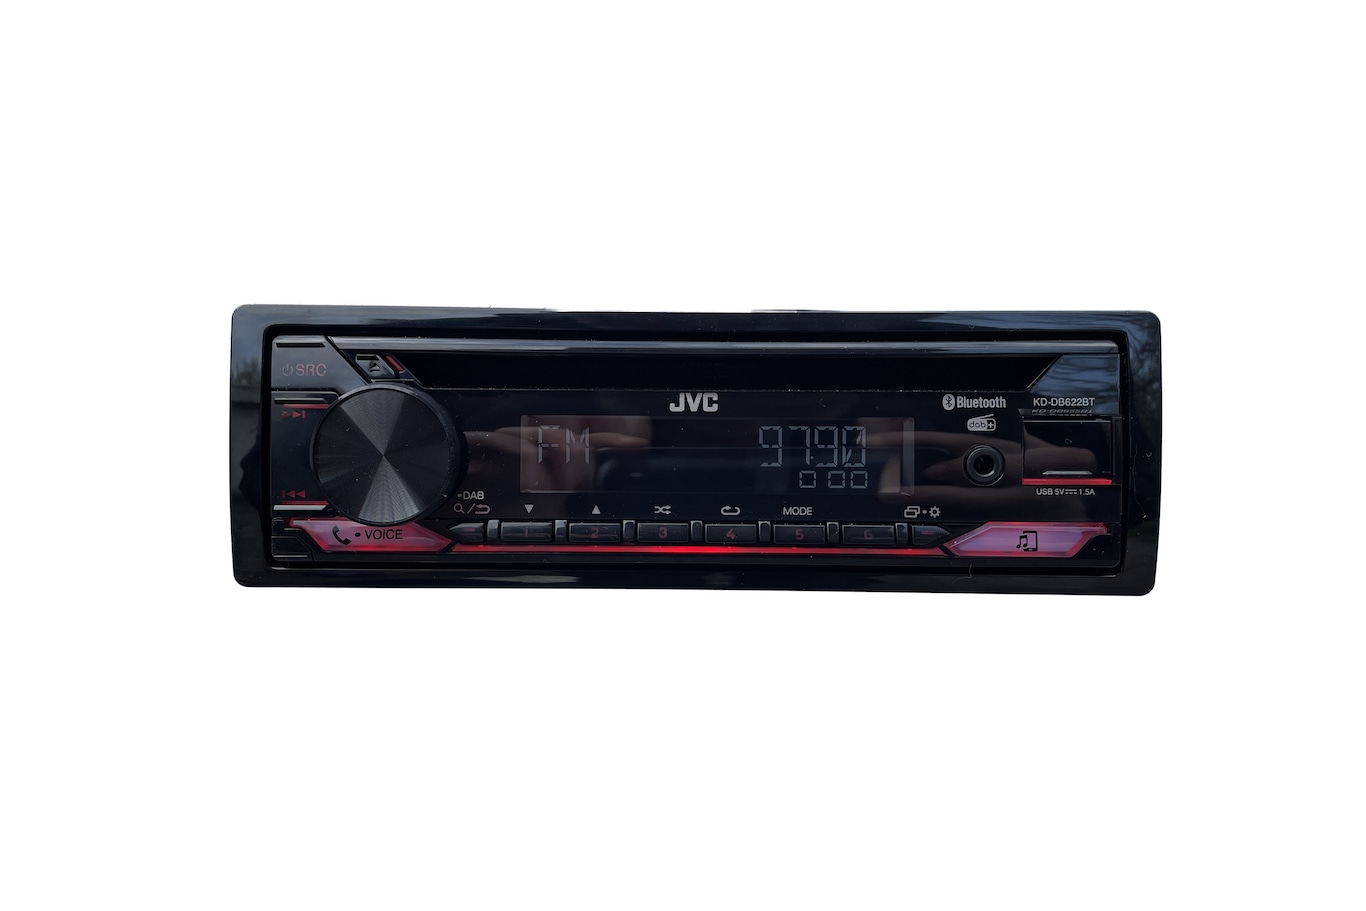 Das 1-DIN-Autoradio KD-DB622BT von JVK im Test